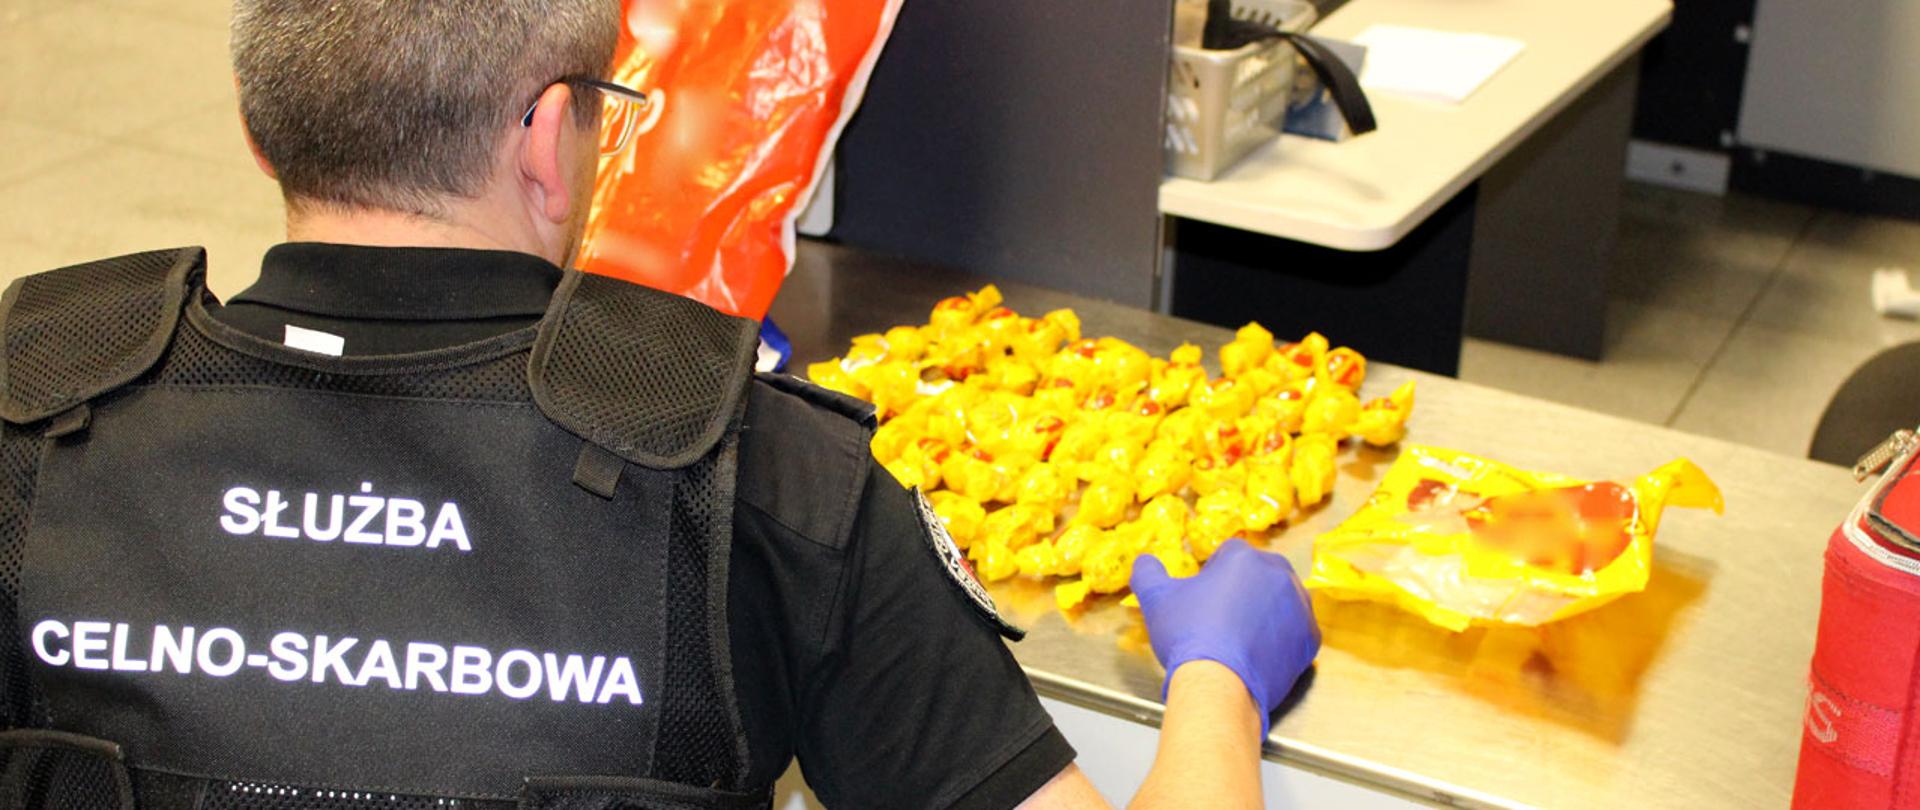 Funkcjonariusz Służby Celno-Skarbowej przy rozłożonych na blacie żółtych cukierkach.